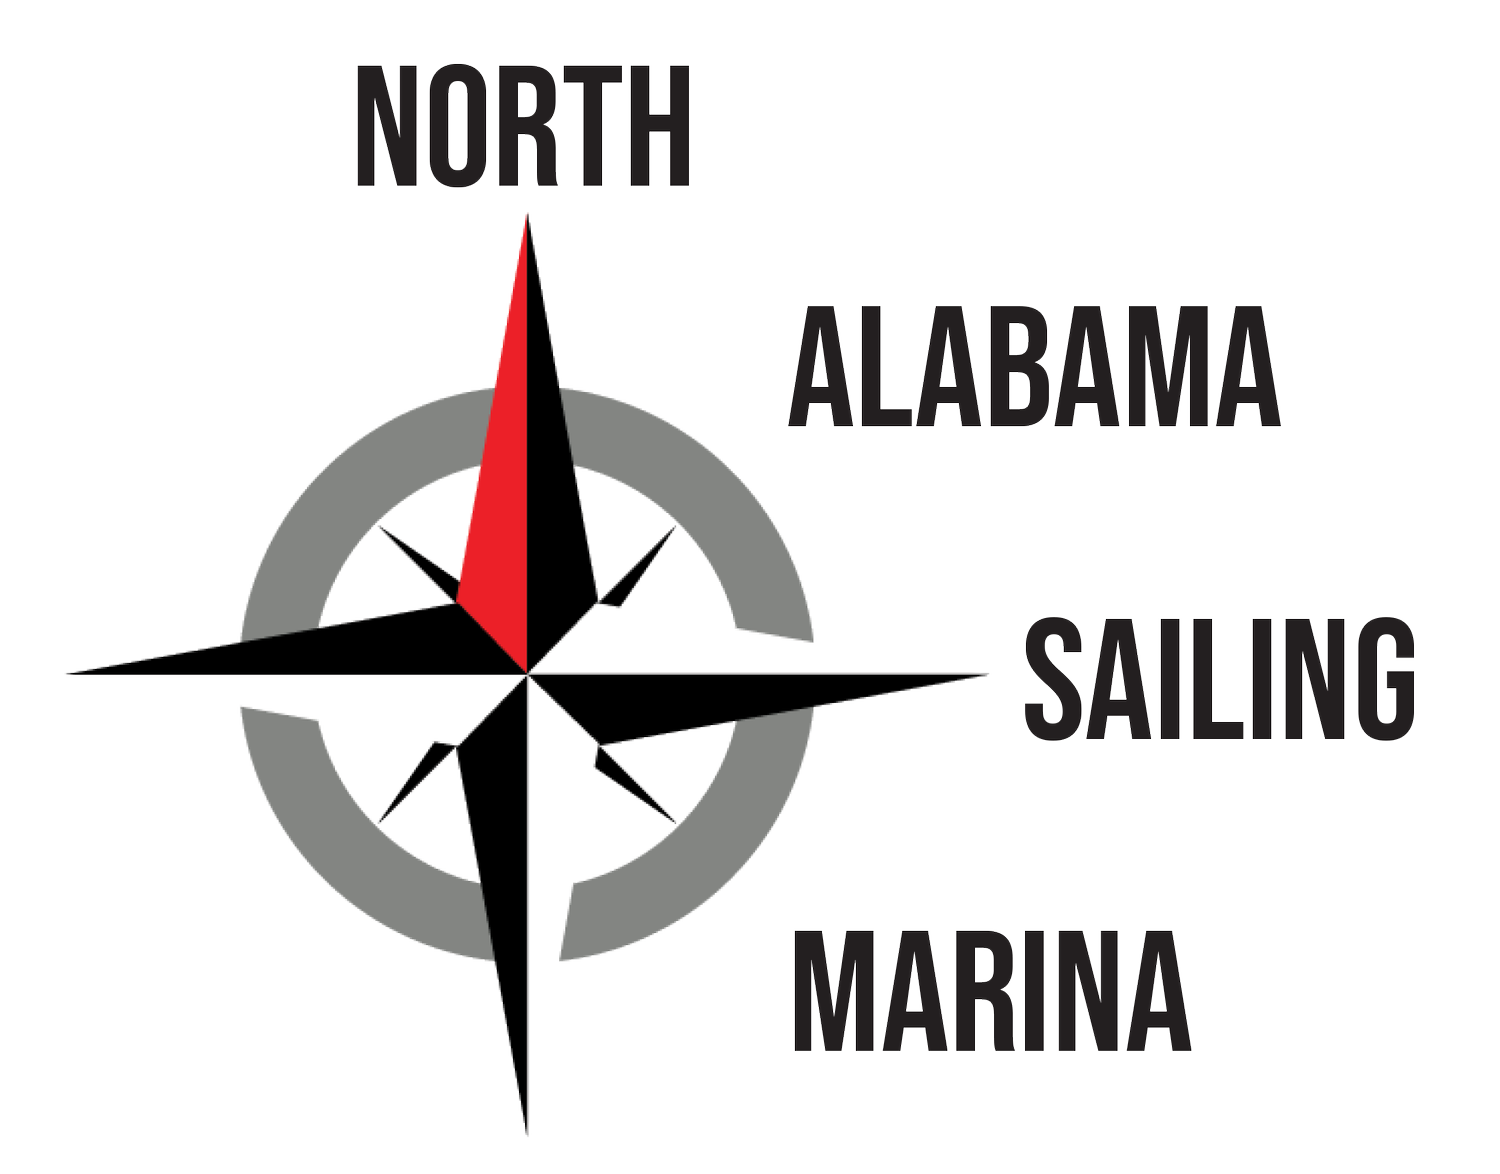 North Alabama Sailing Marina